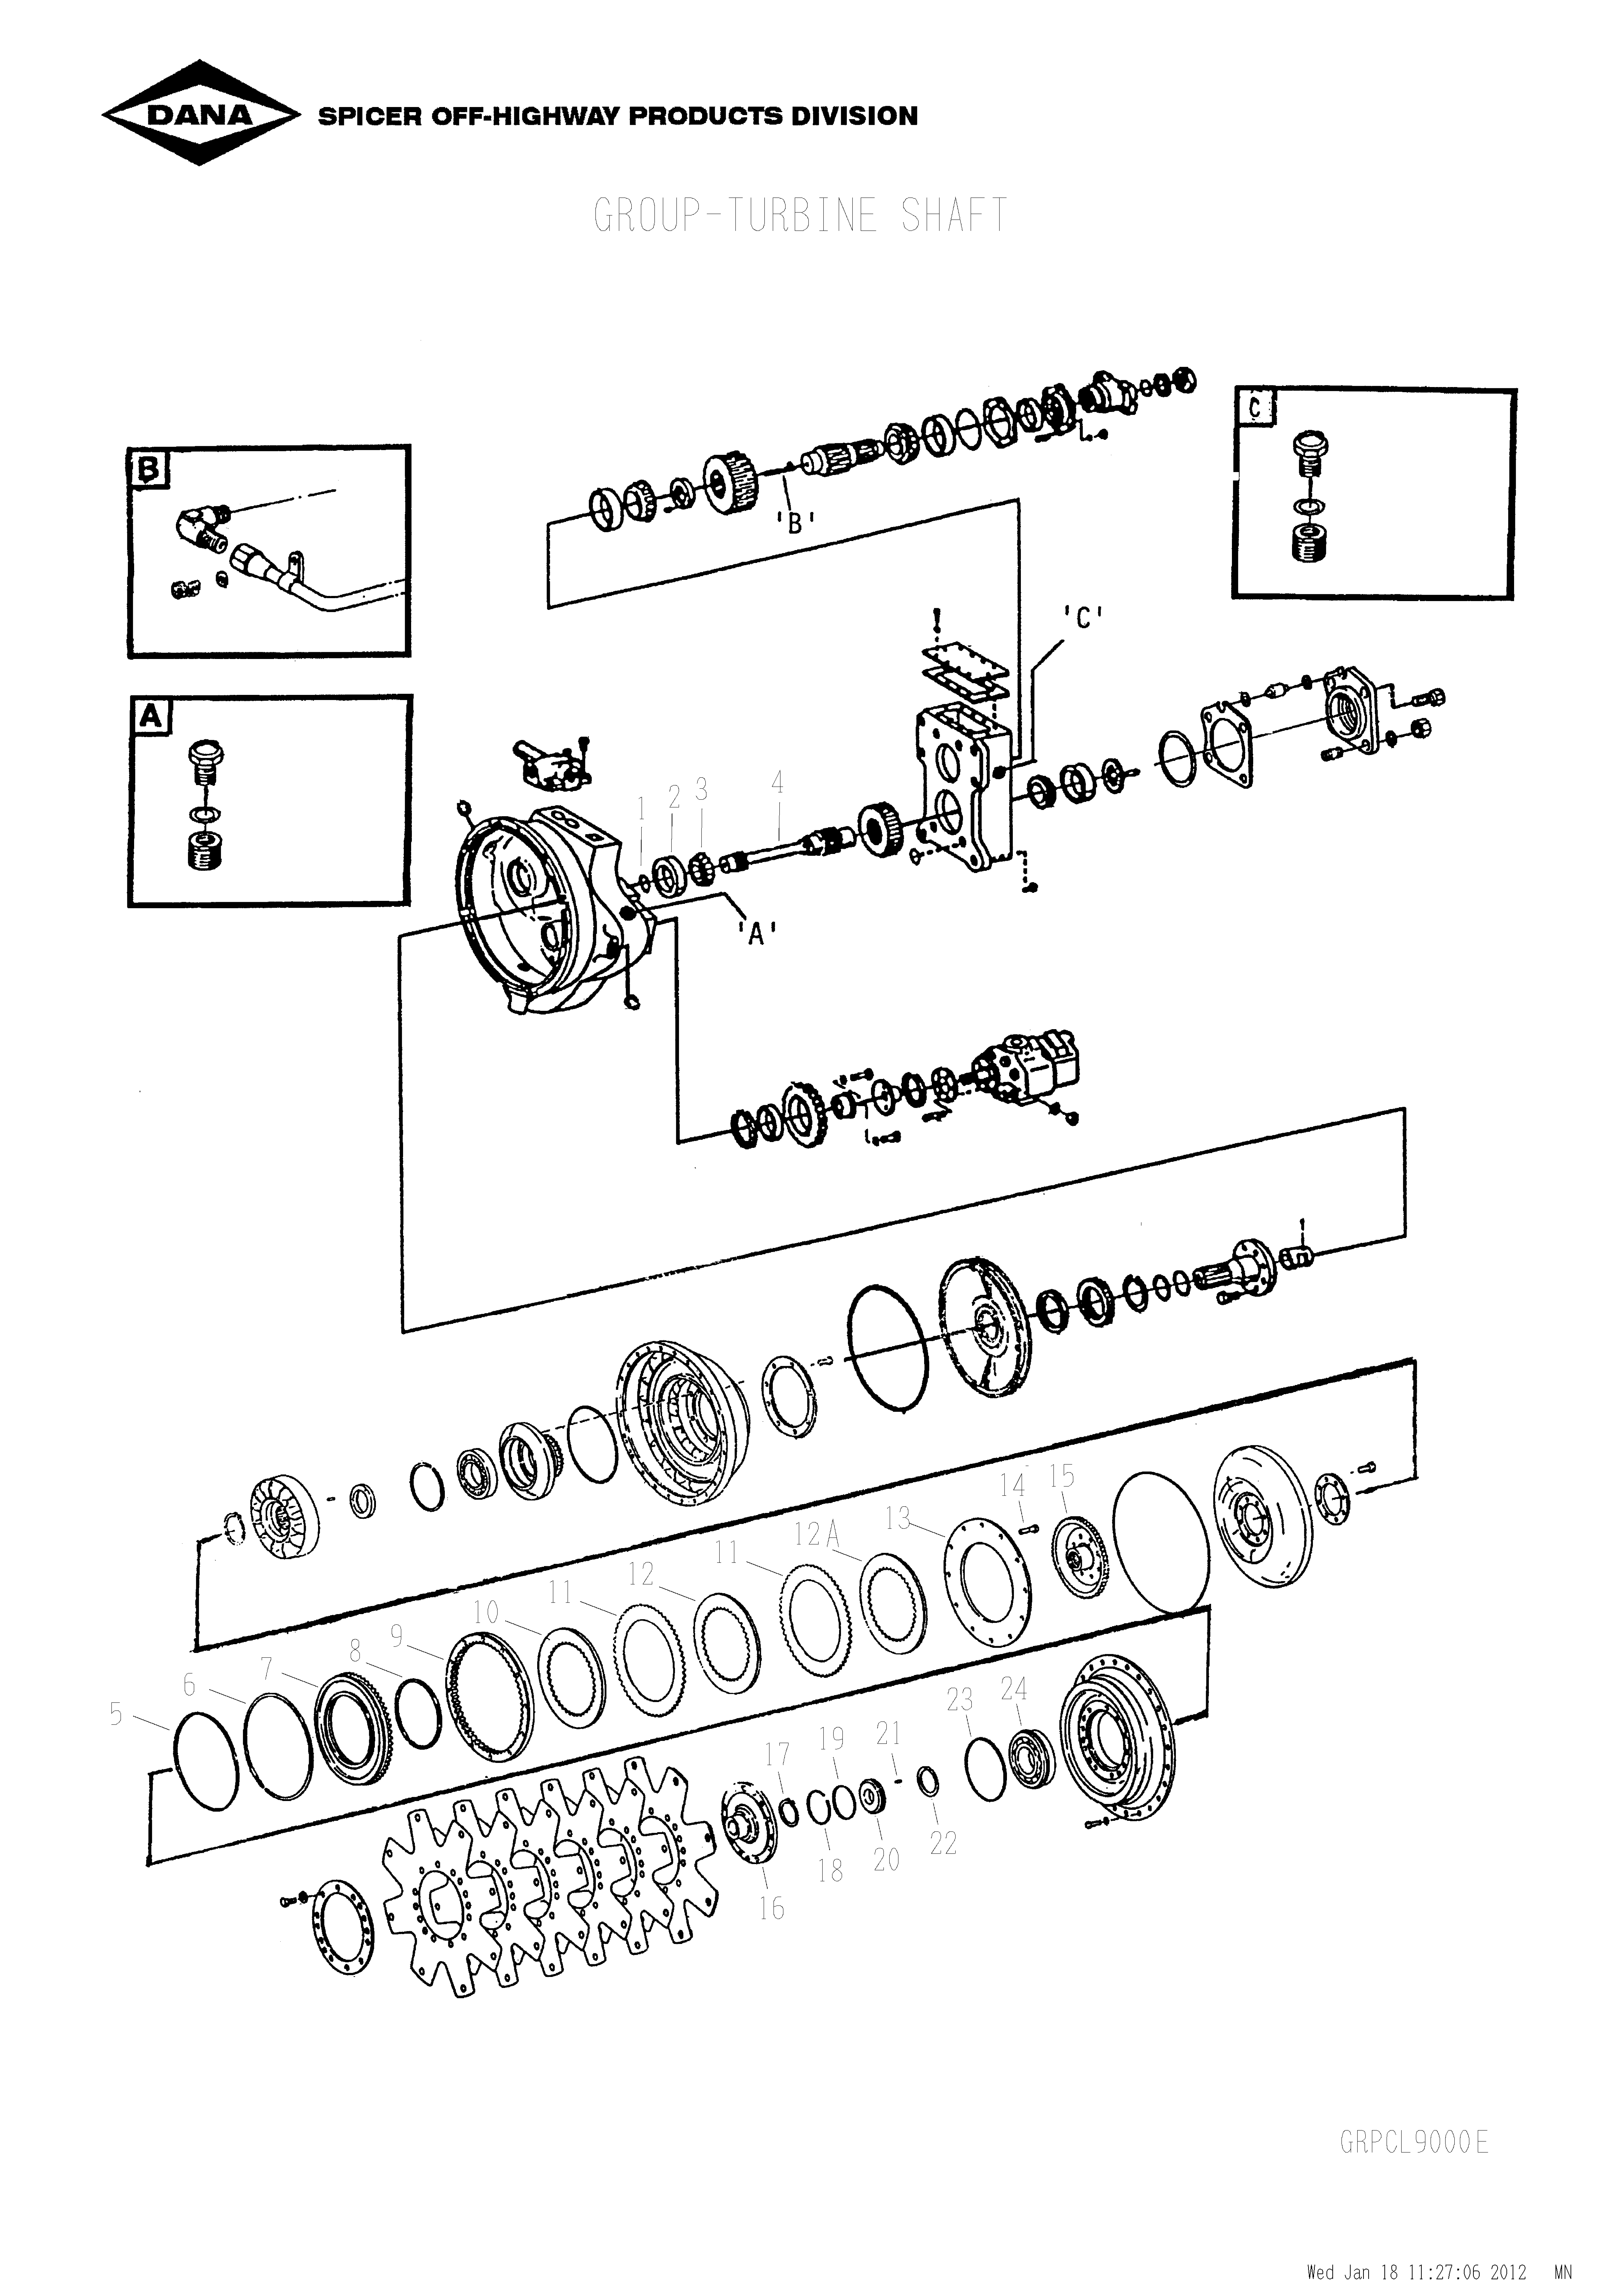 drawing for SCHOEMA, SCHOETTLER MASCHINENFABRIK K24.000085 - RING